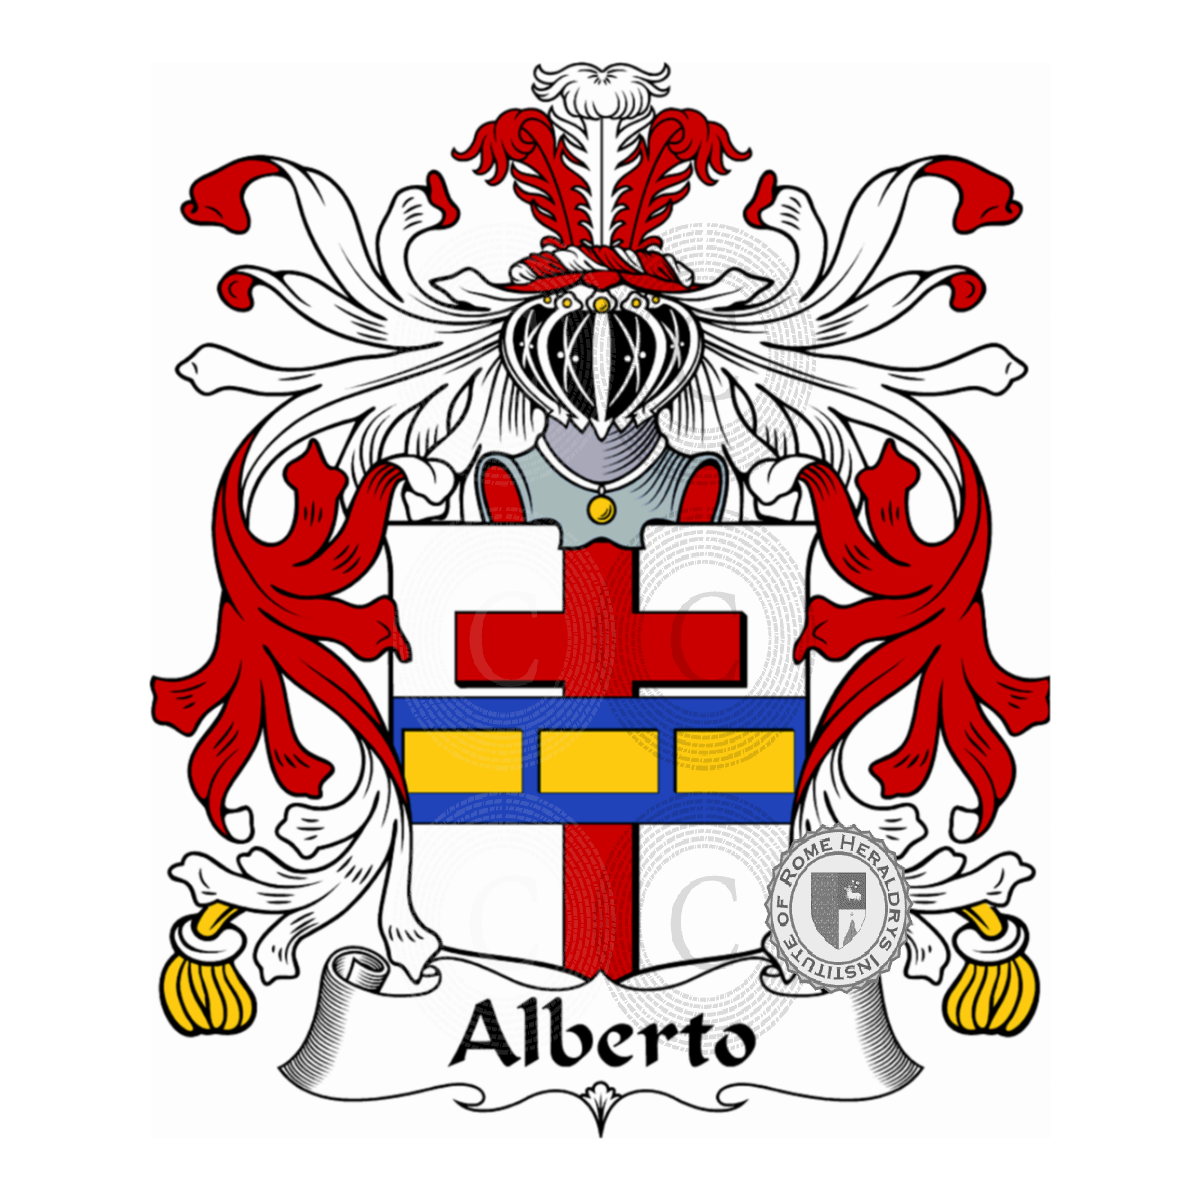 Stemma della famigliaAlberto, d'Alberto d'Orso,da Sant'Alberto